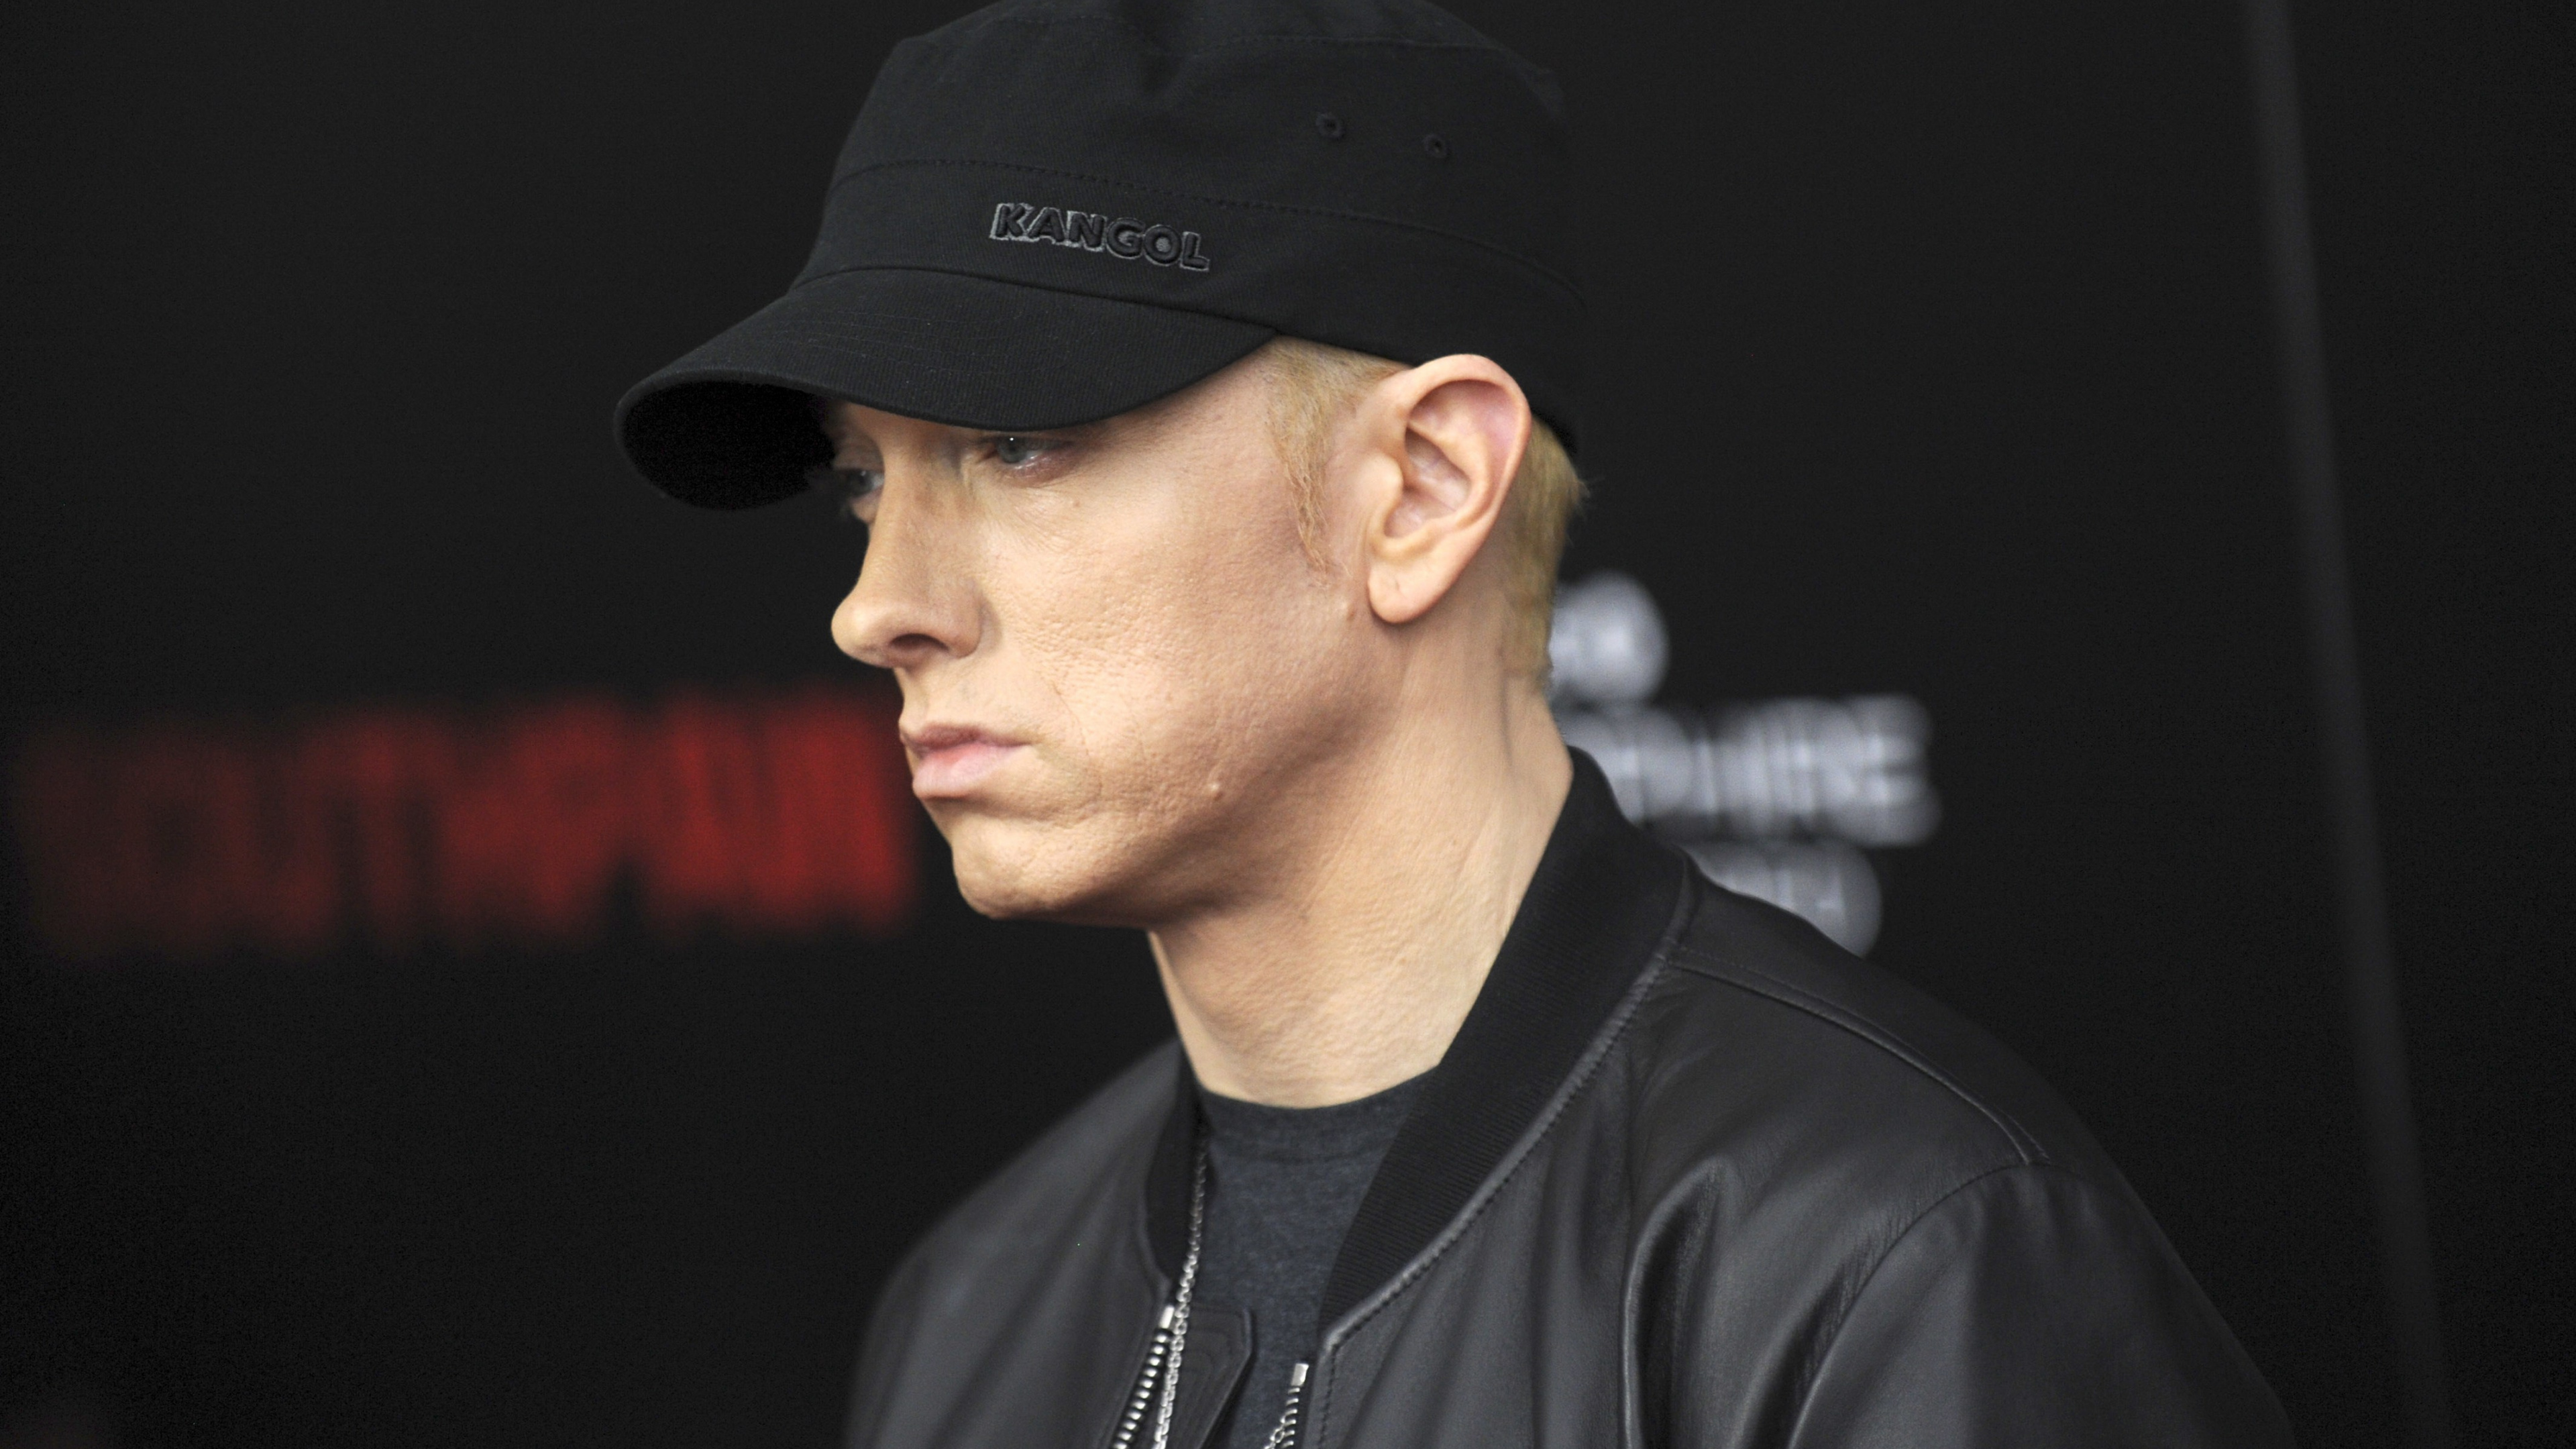 Eminem, Rapper, Hip-hop-Musik, Cool, Kappe. Wallpaper in 3840x2160 Resolution